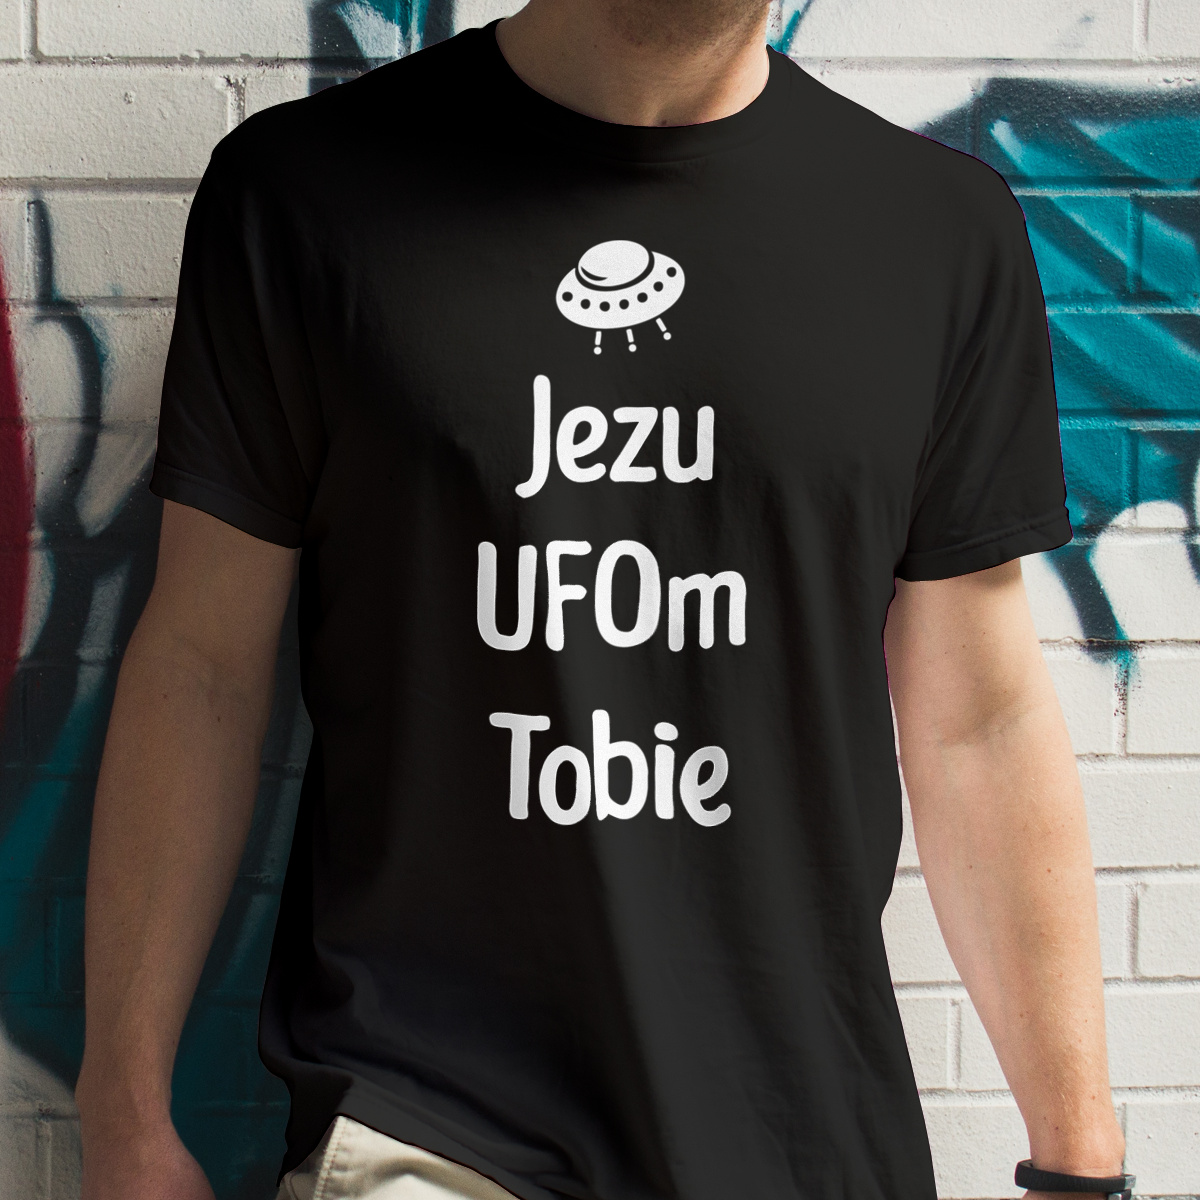 Jezu Ufom Tobie - Męska Koszulka Czarna